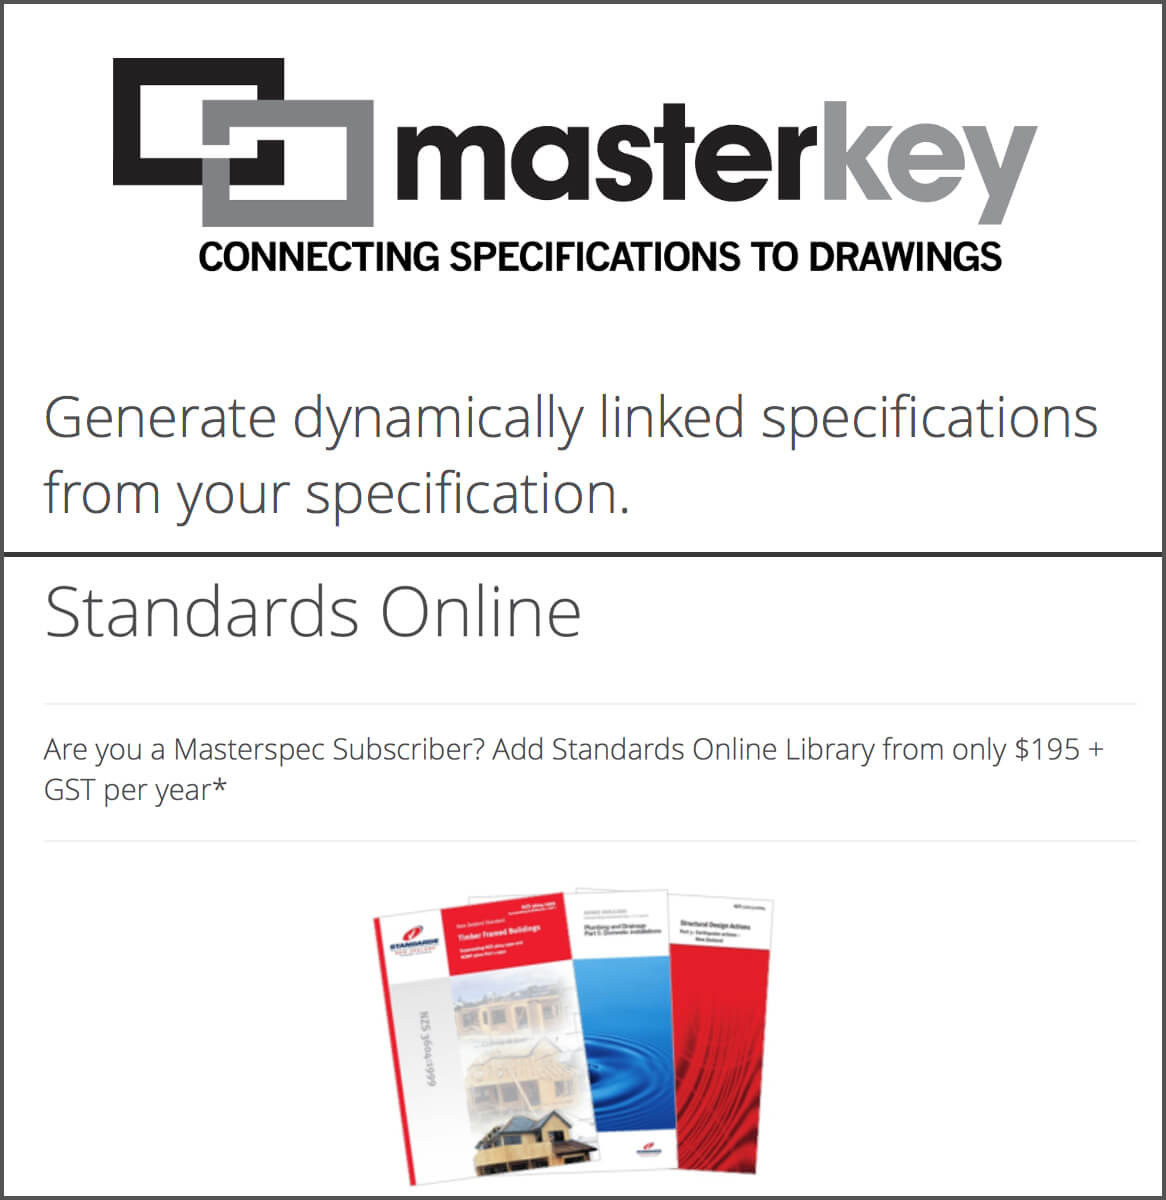 masterkey-standards-img